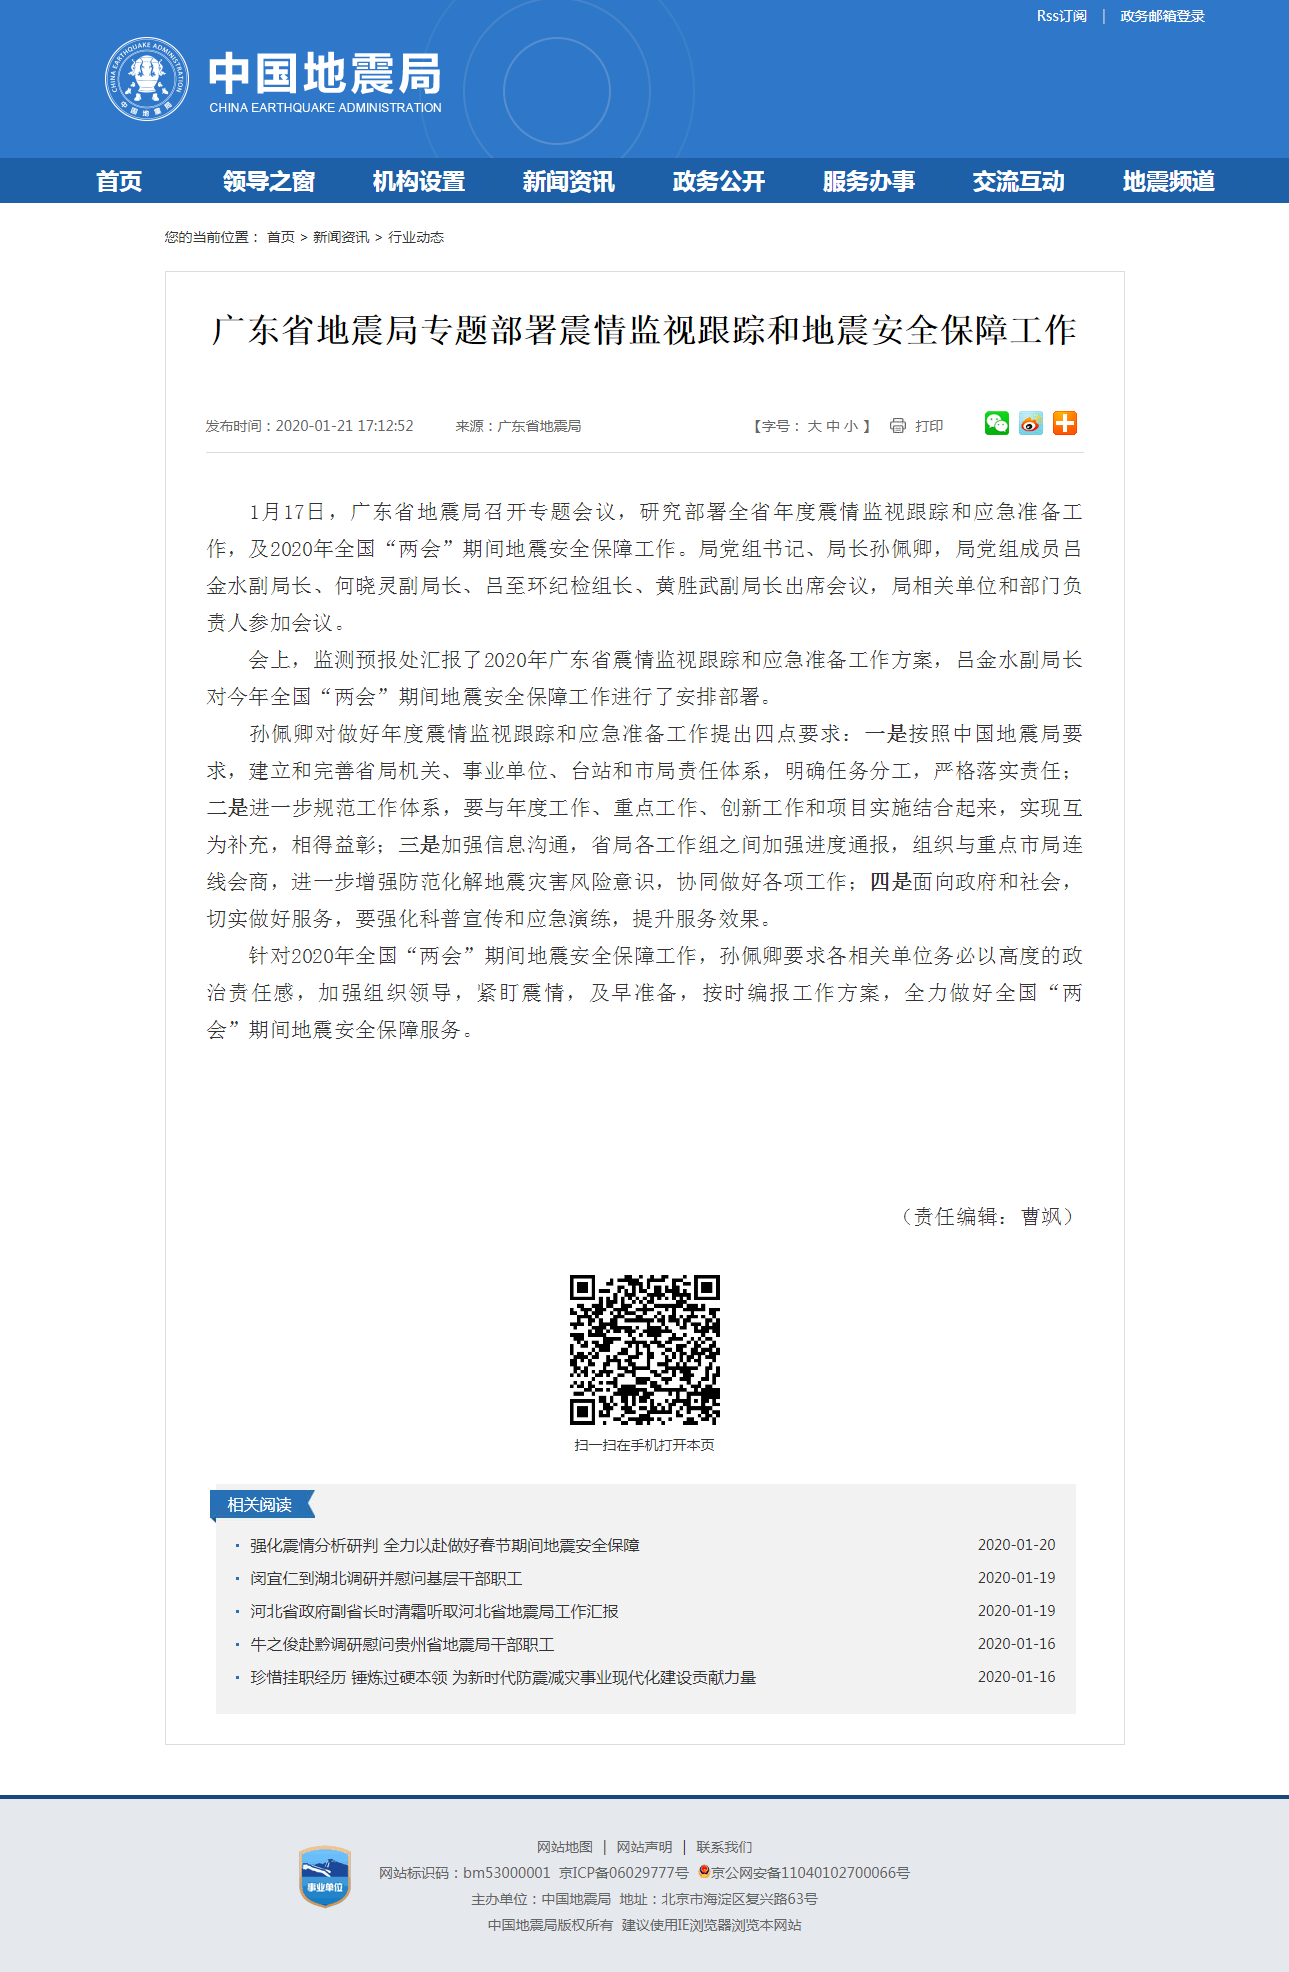 广东省地震局专题部署震情监视跟踪和地震安全保障工作.png